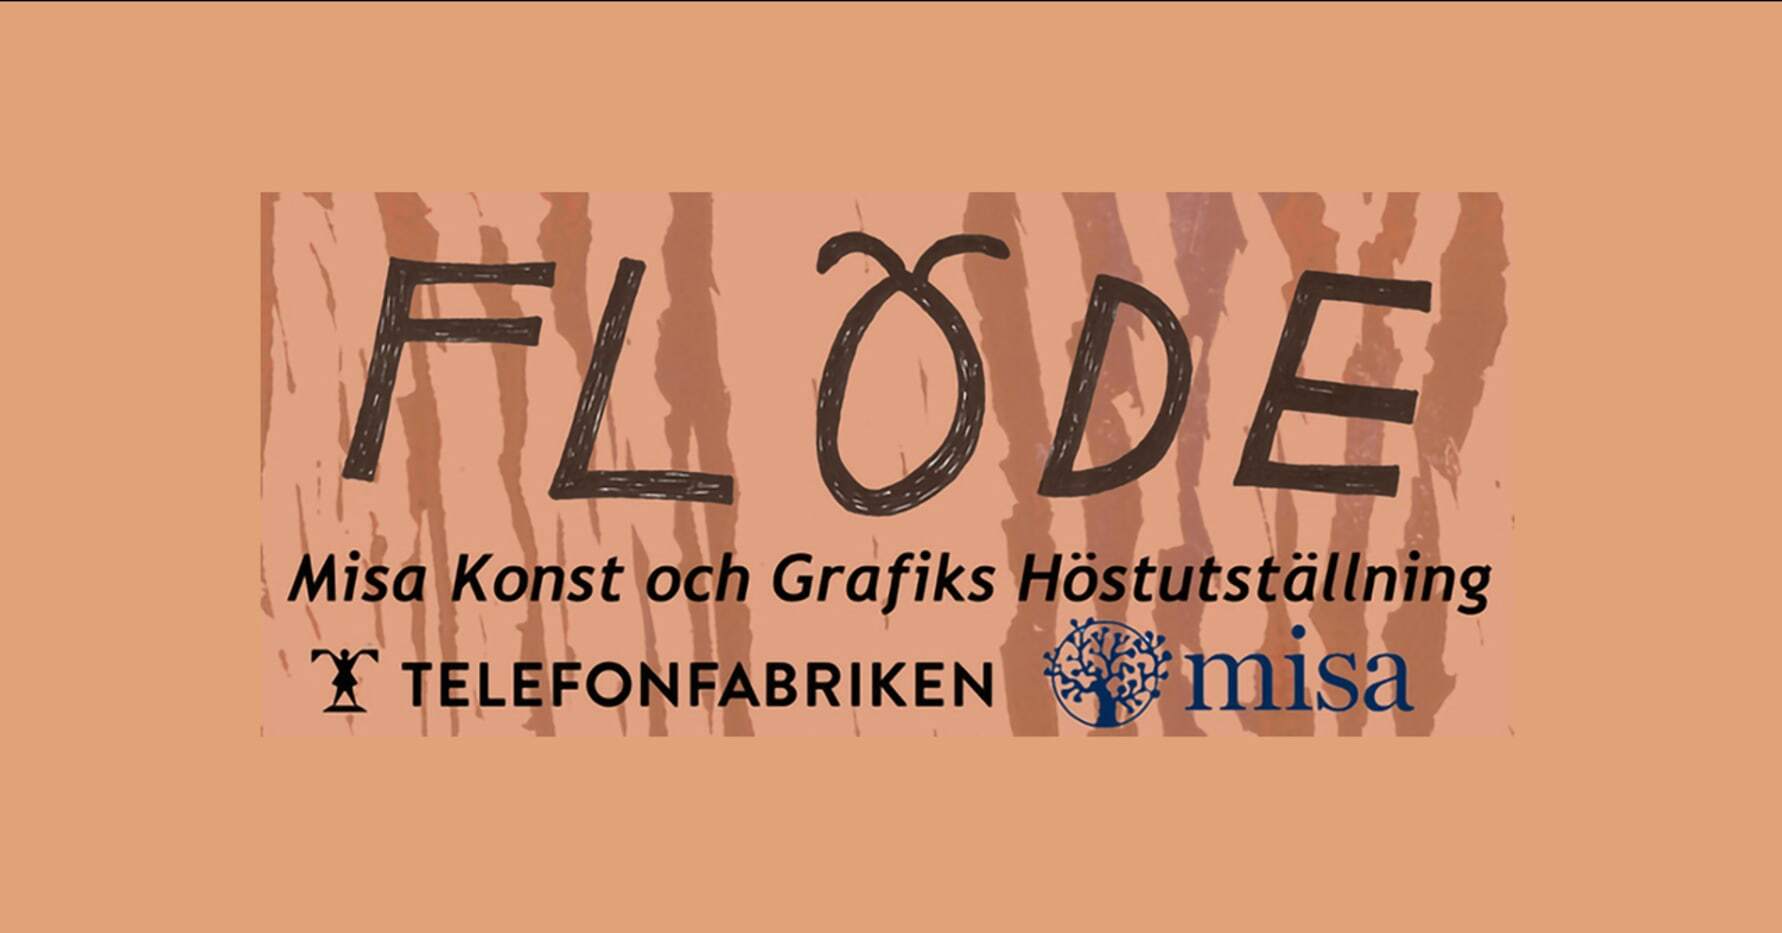 Misa Konst och Grafik bjuder in till vernissage den 26 september med Höstutställningen "Flöde" i Telefonfabrikens Konsthall!loading=